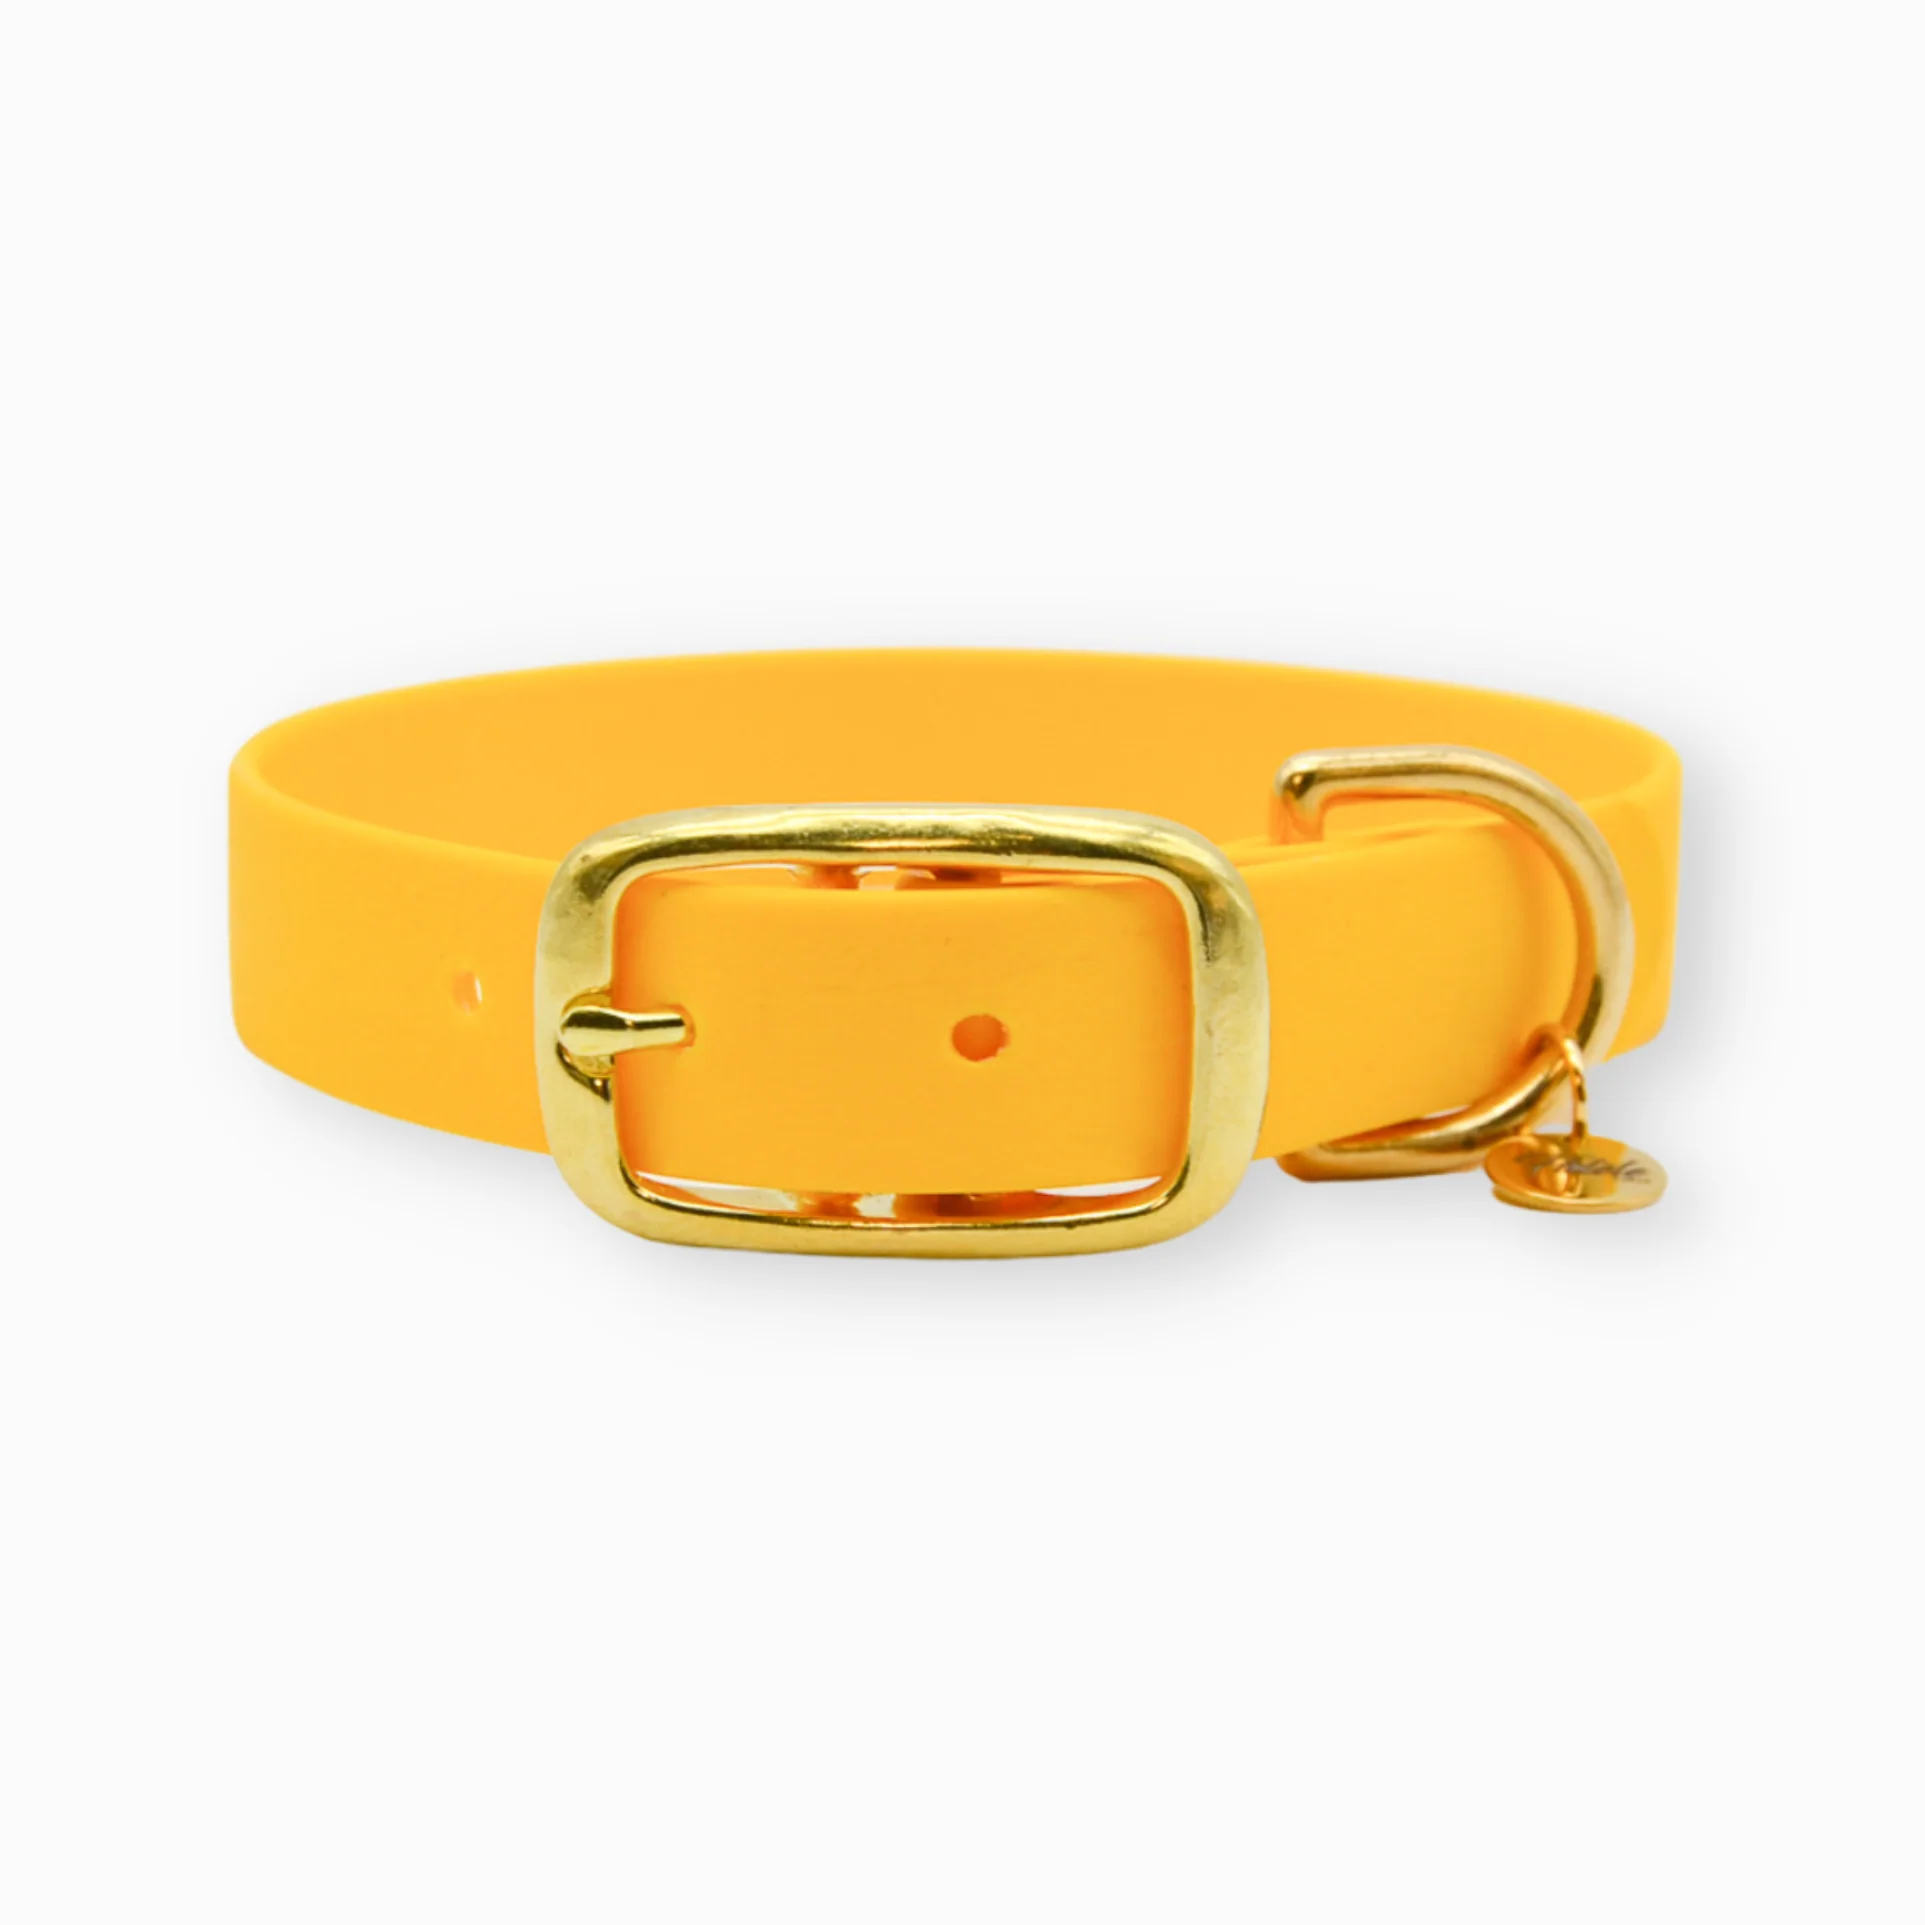 Sellerie En Cadence Montfort l'Amaury Concept Store Chiens Chevaux Cavaliers Fidèle Paris Colliers Aventurier Jaune Yellow Sun